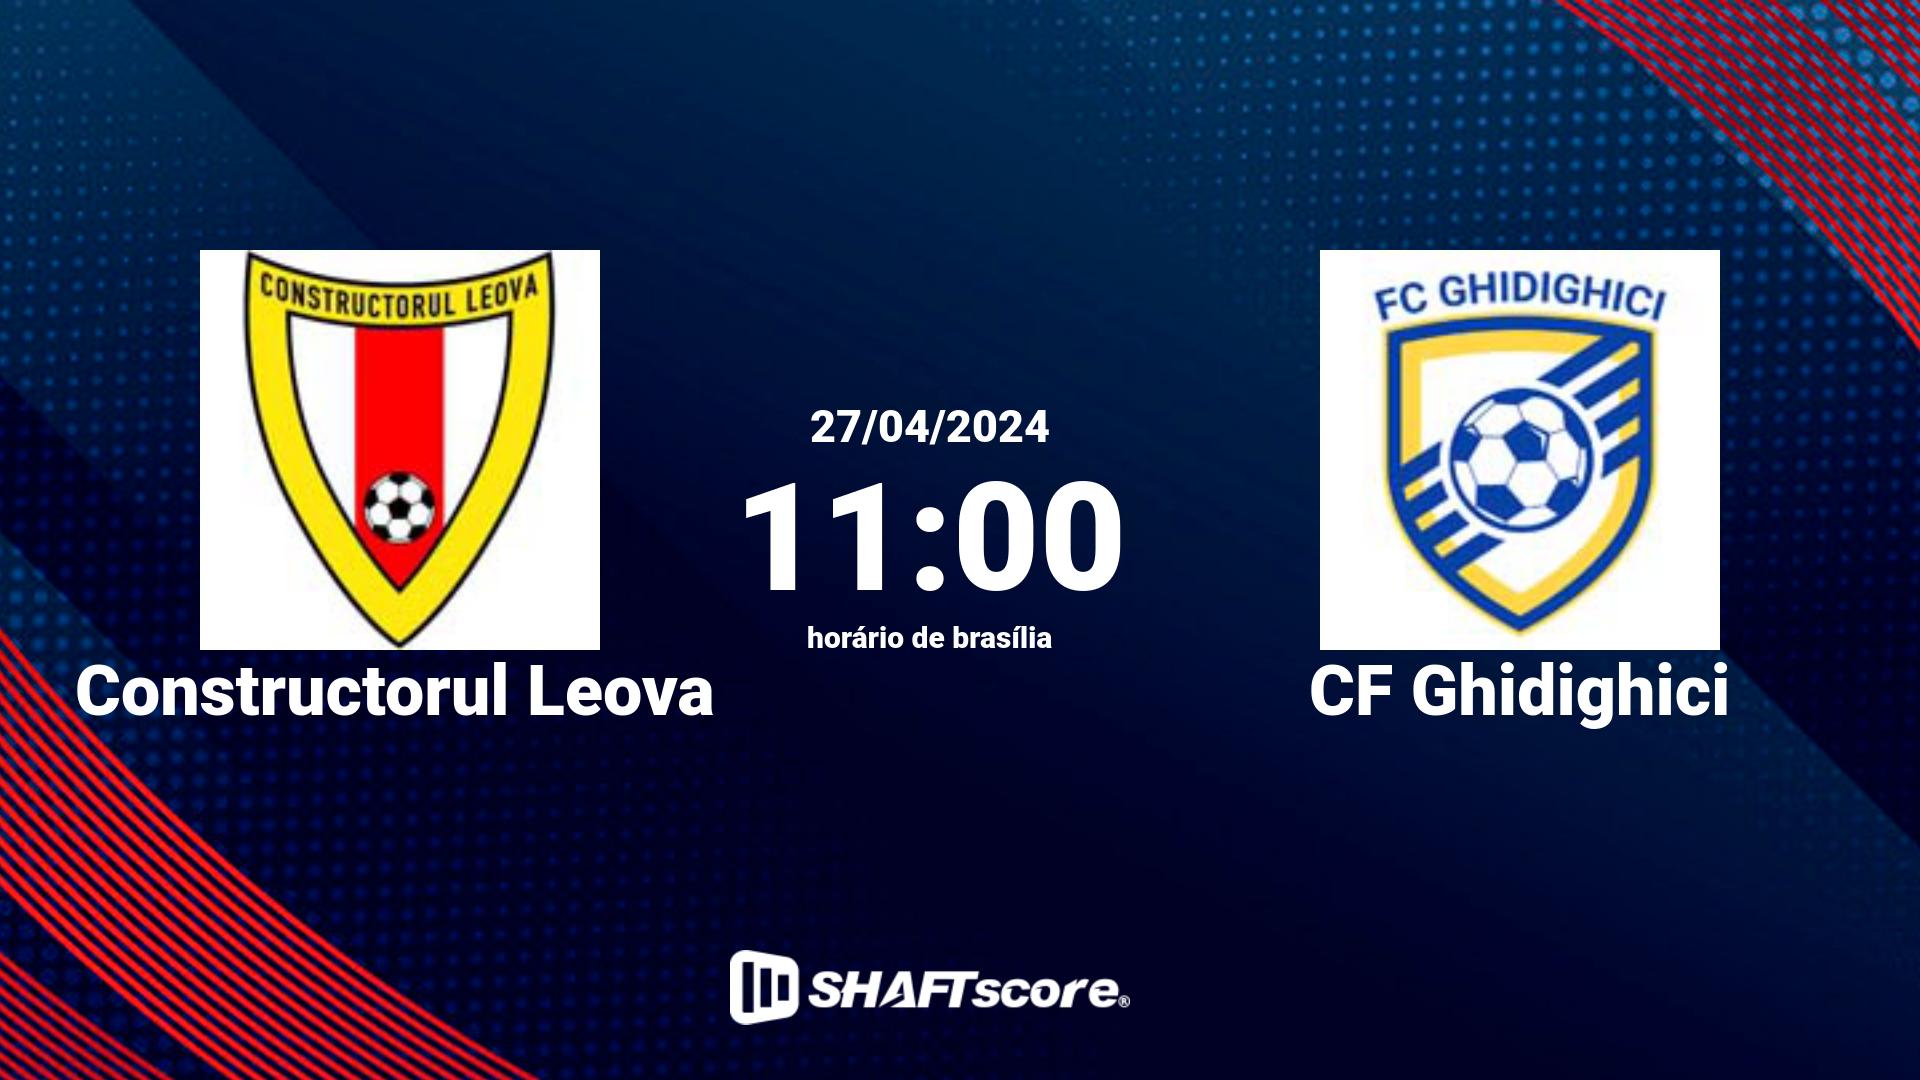 Estatísticas do jogo Constructorul Leova vs CF Ghidighici 27.04 11:00